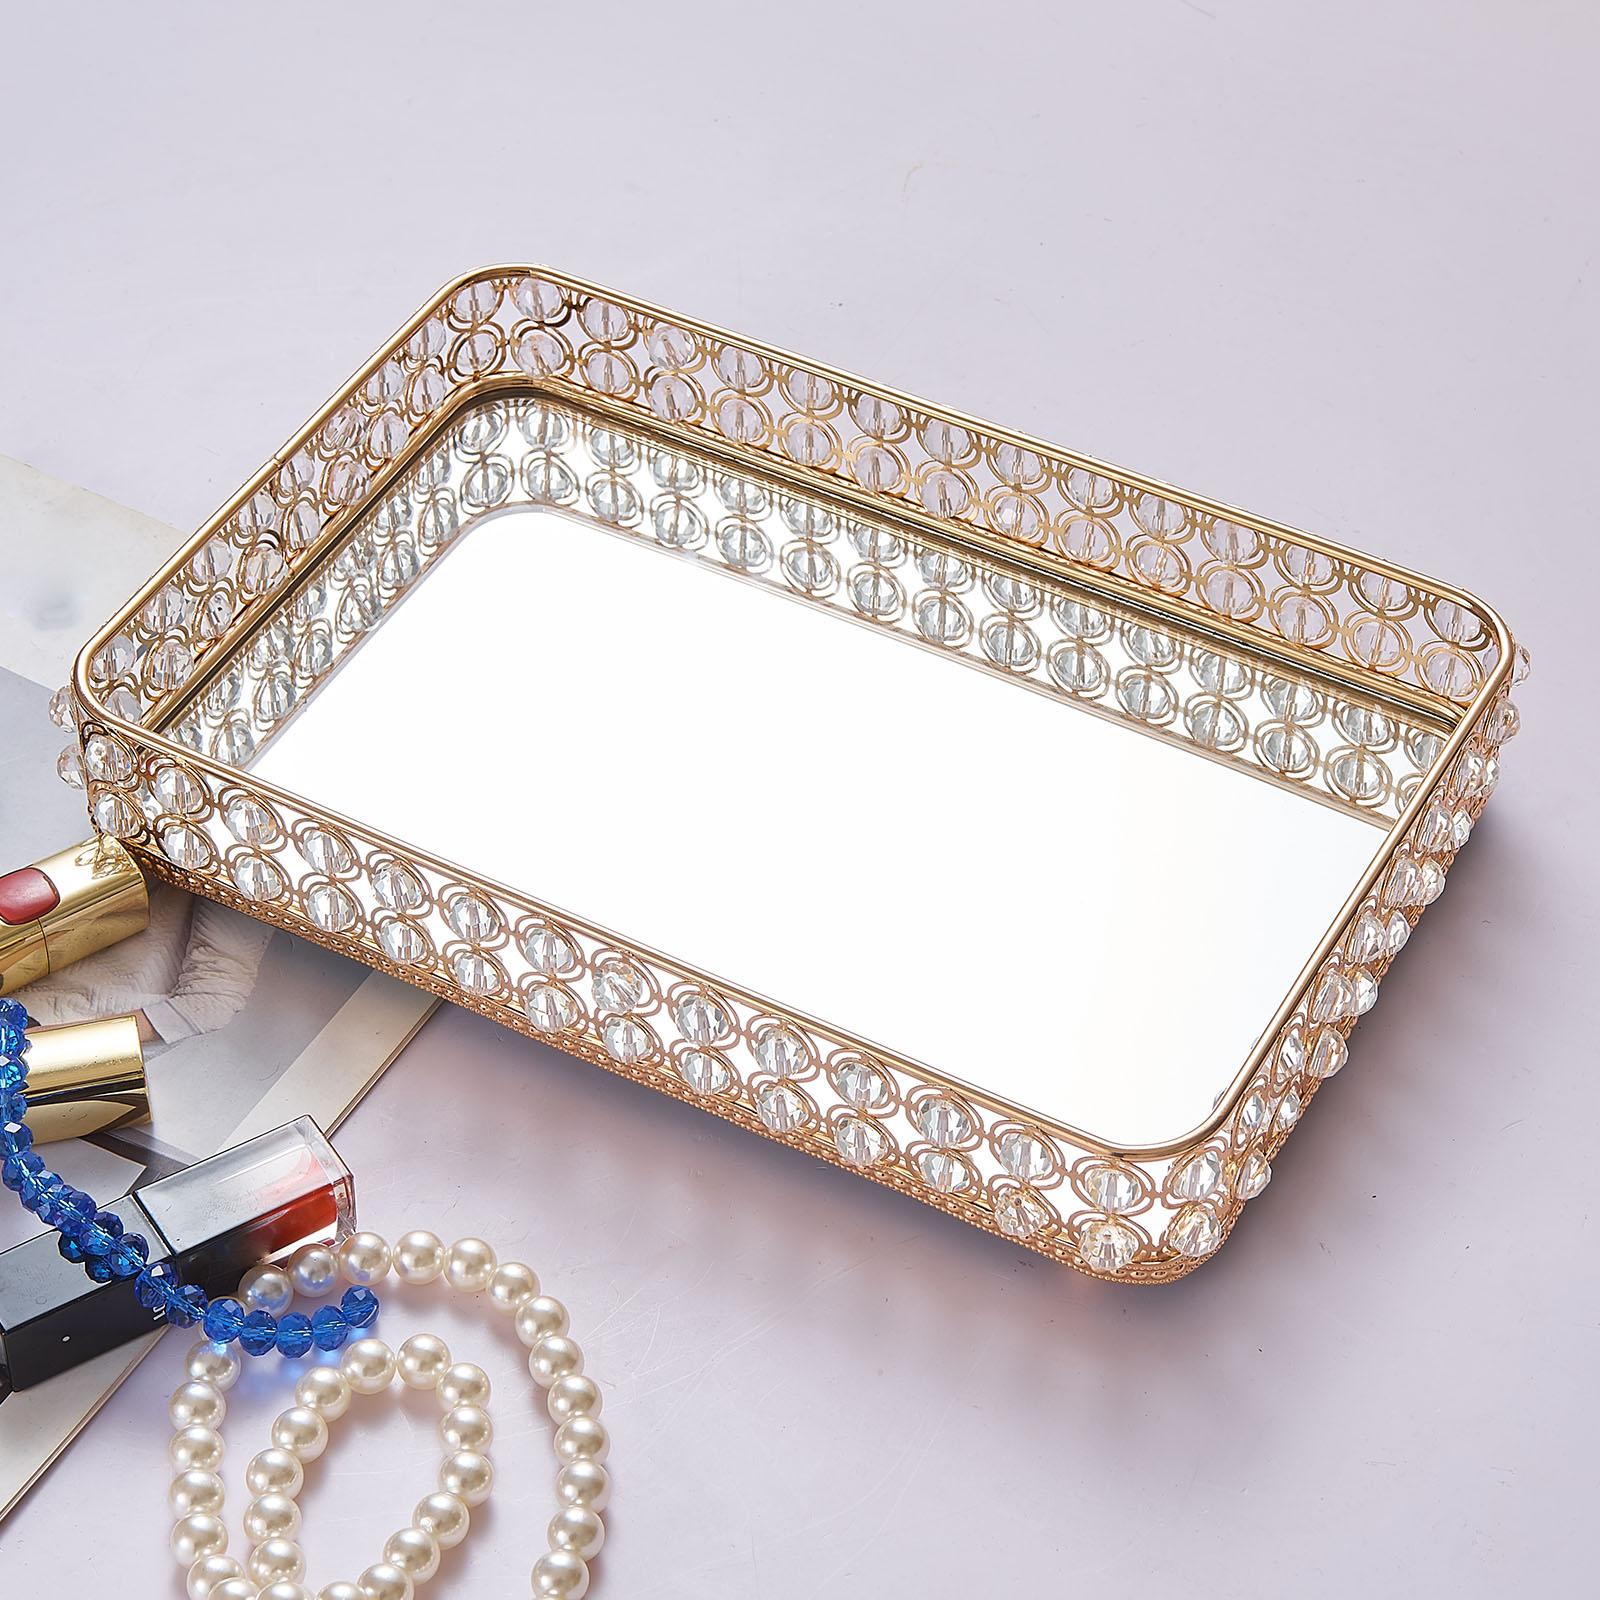 Mirrored Crystal Tray Rectangle Perfume Tray Bathroom Tray Decorative Tray